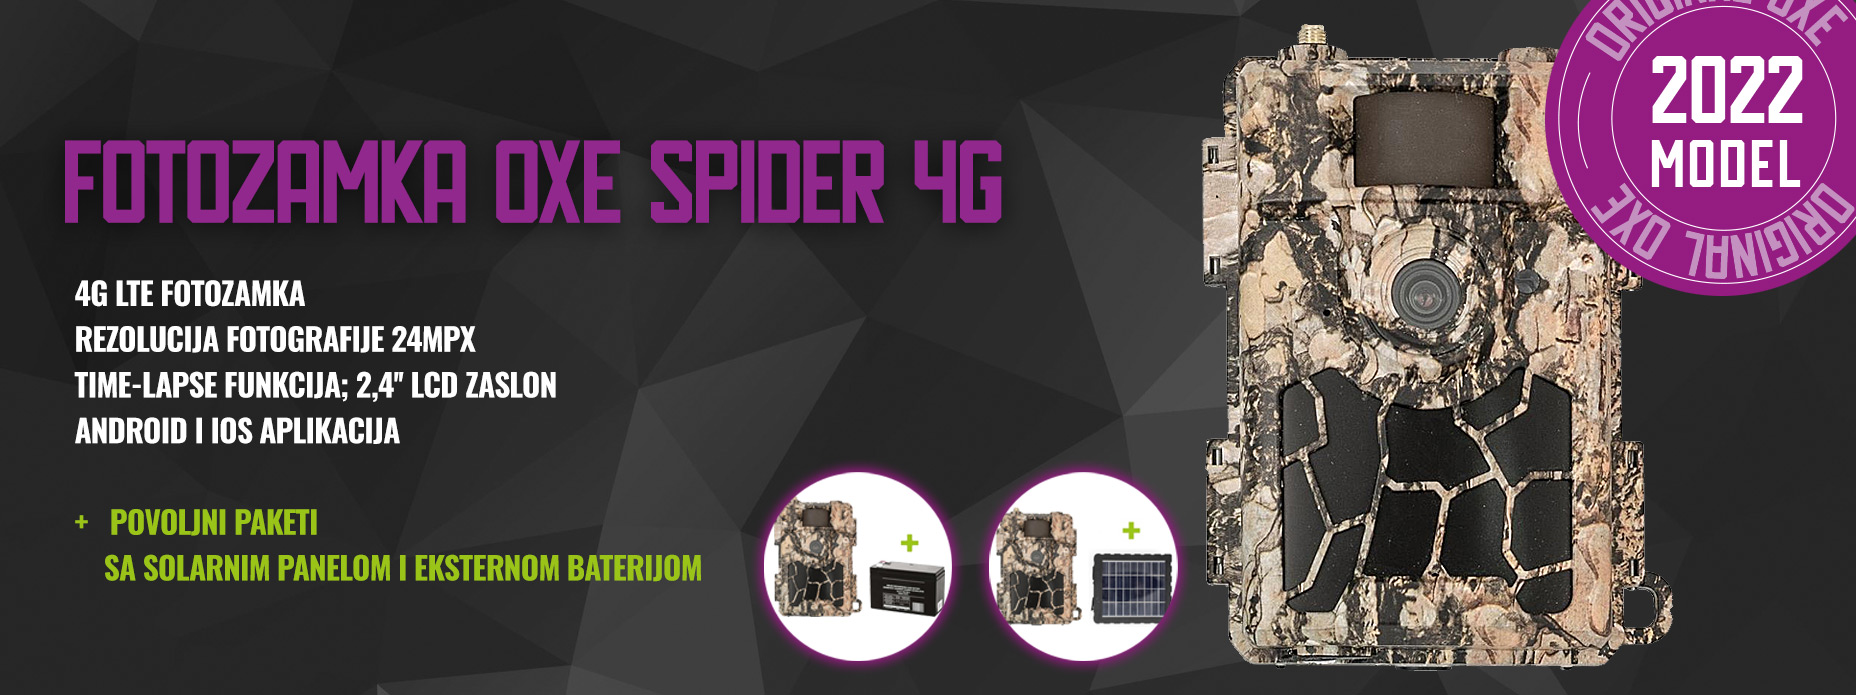 Fotozamka OXE Spider 4G